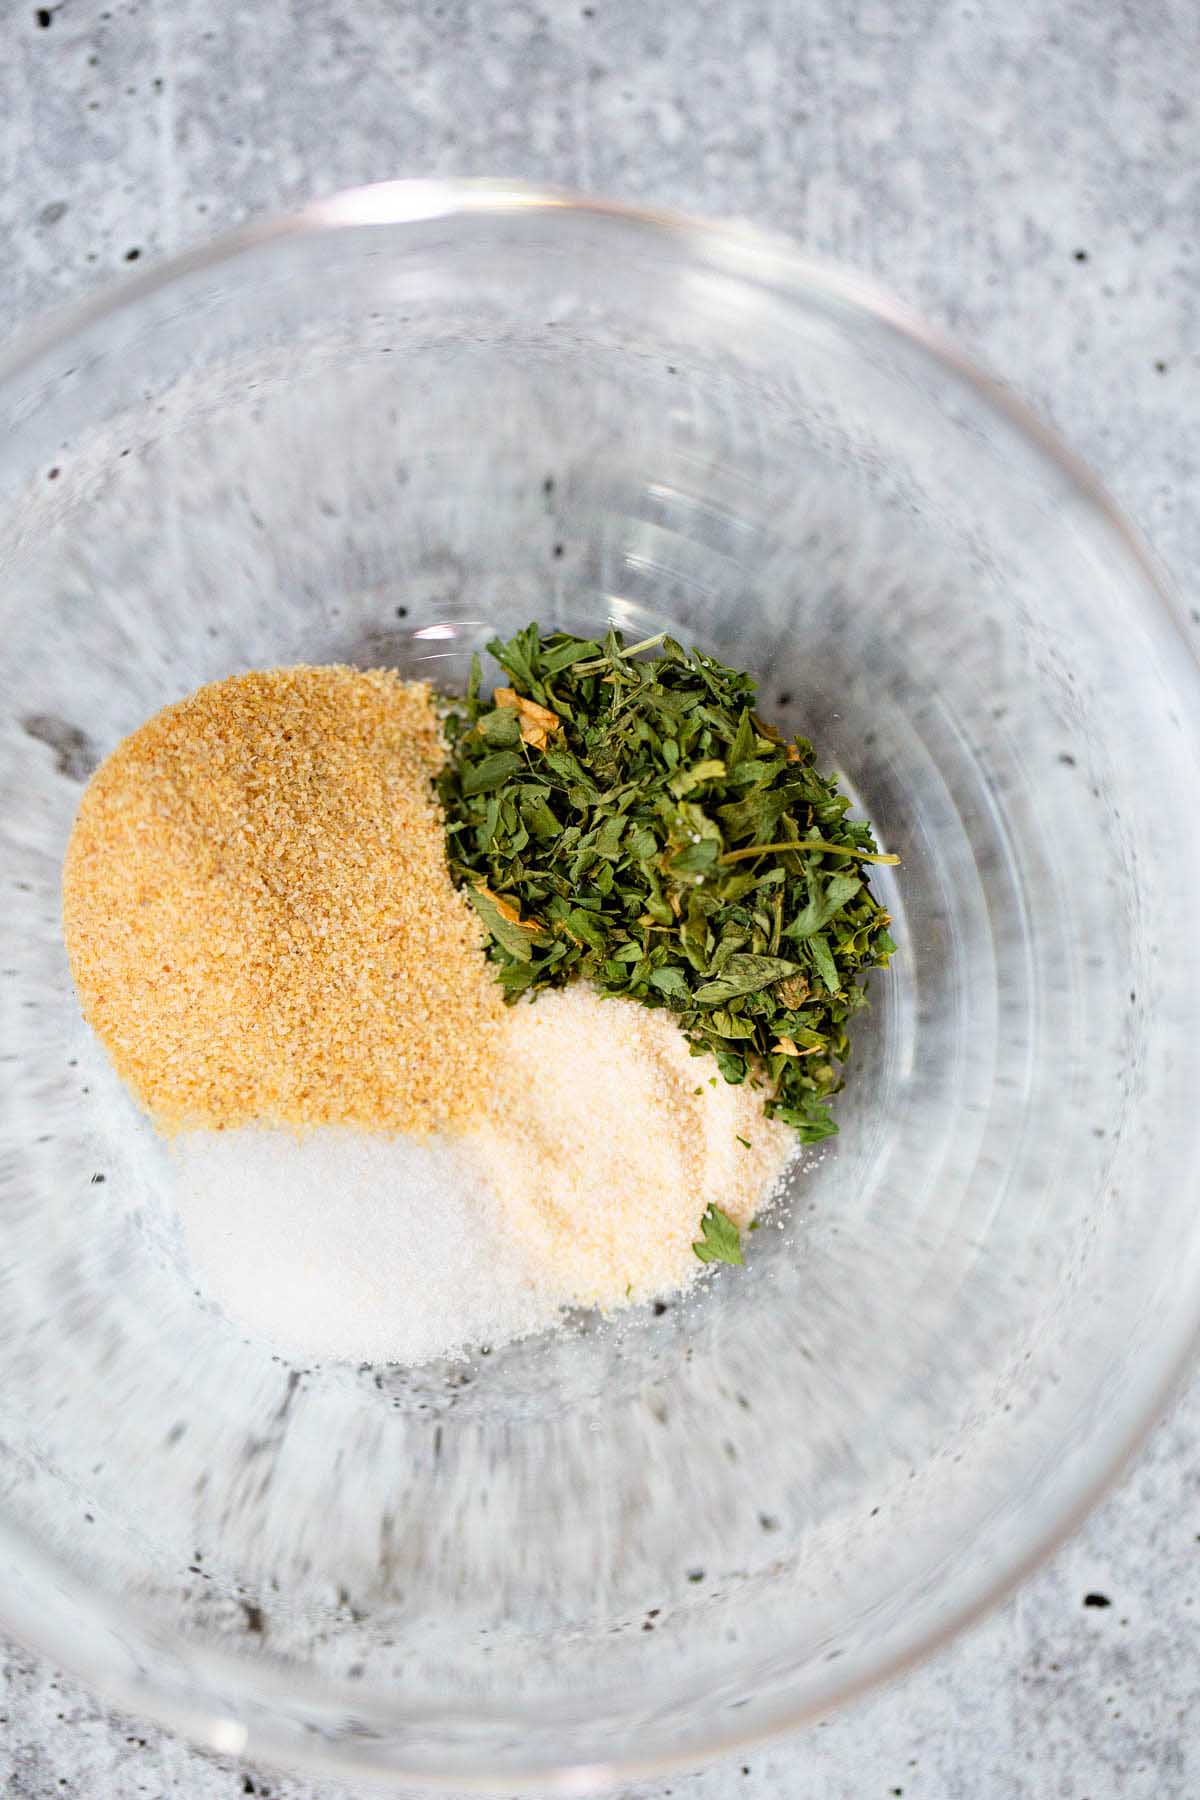 Spices in a bowl - garlic powder, salt, onion powder, dried parsley.